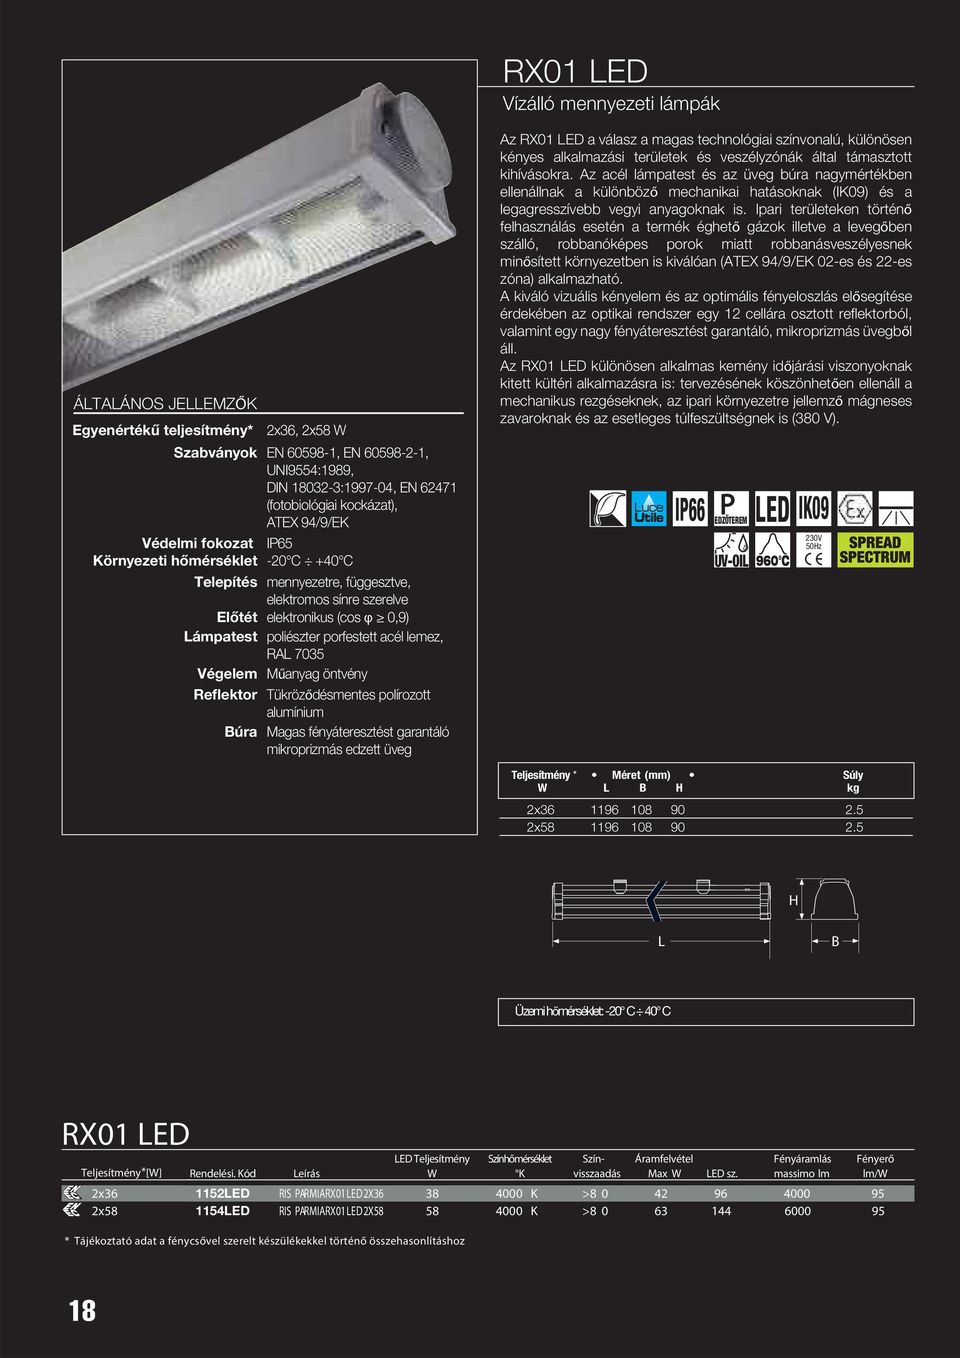 porfestett acél lemez, RAL 7035 Végelem Műanyag öntvény Reflektor Tükröződésmentes polírozott alumínium Búra Magas fényáteresztést garantáló mikroprizmás edzett üveg Az RX01 LED a válasz a magas